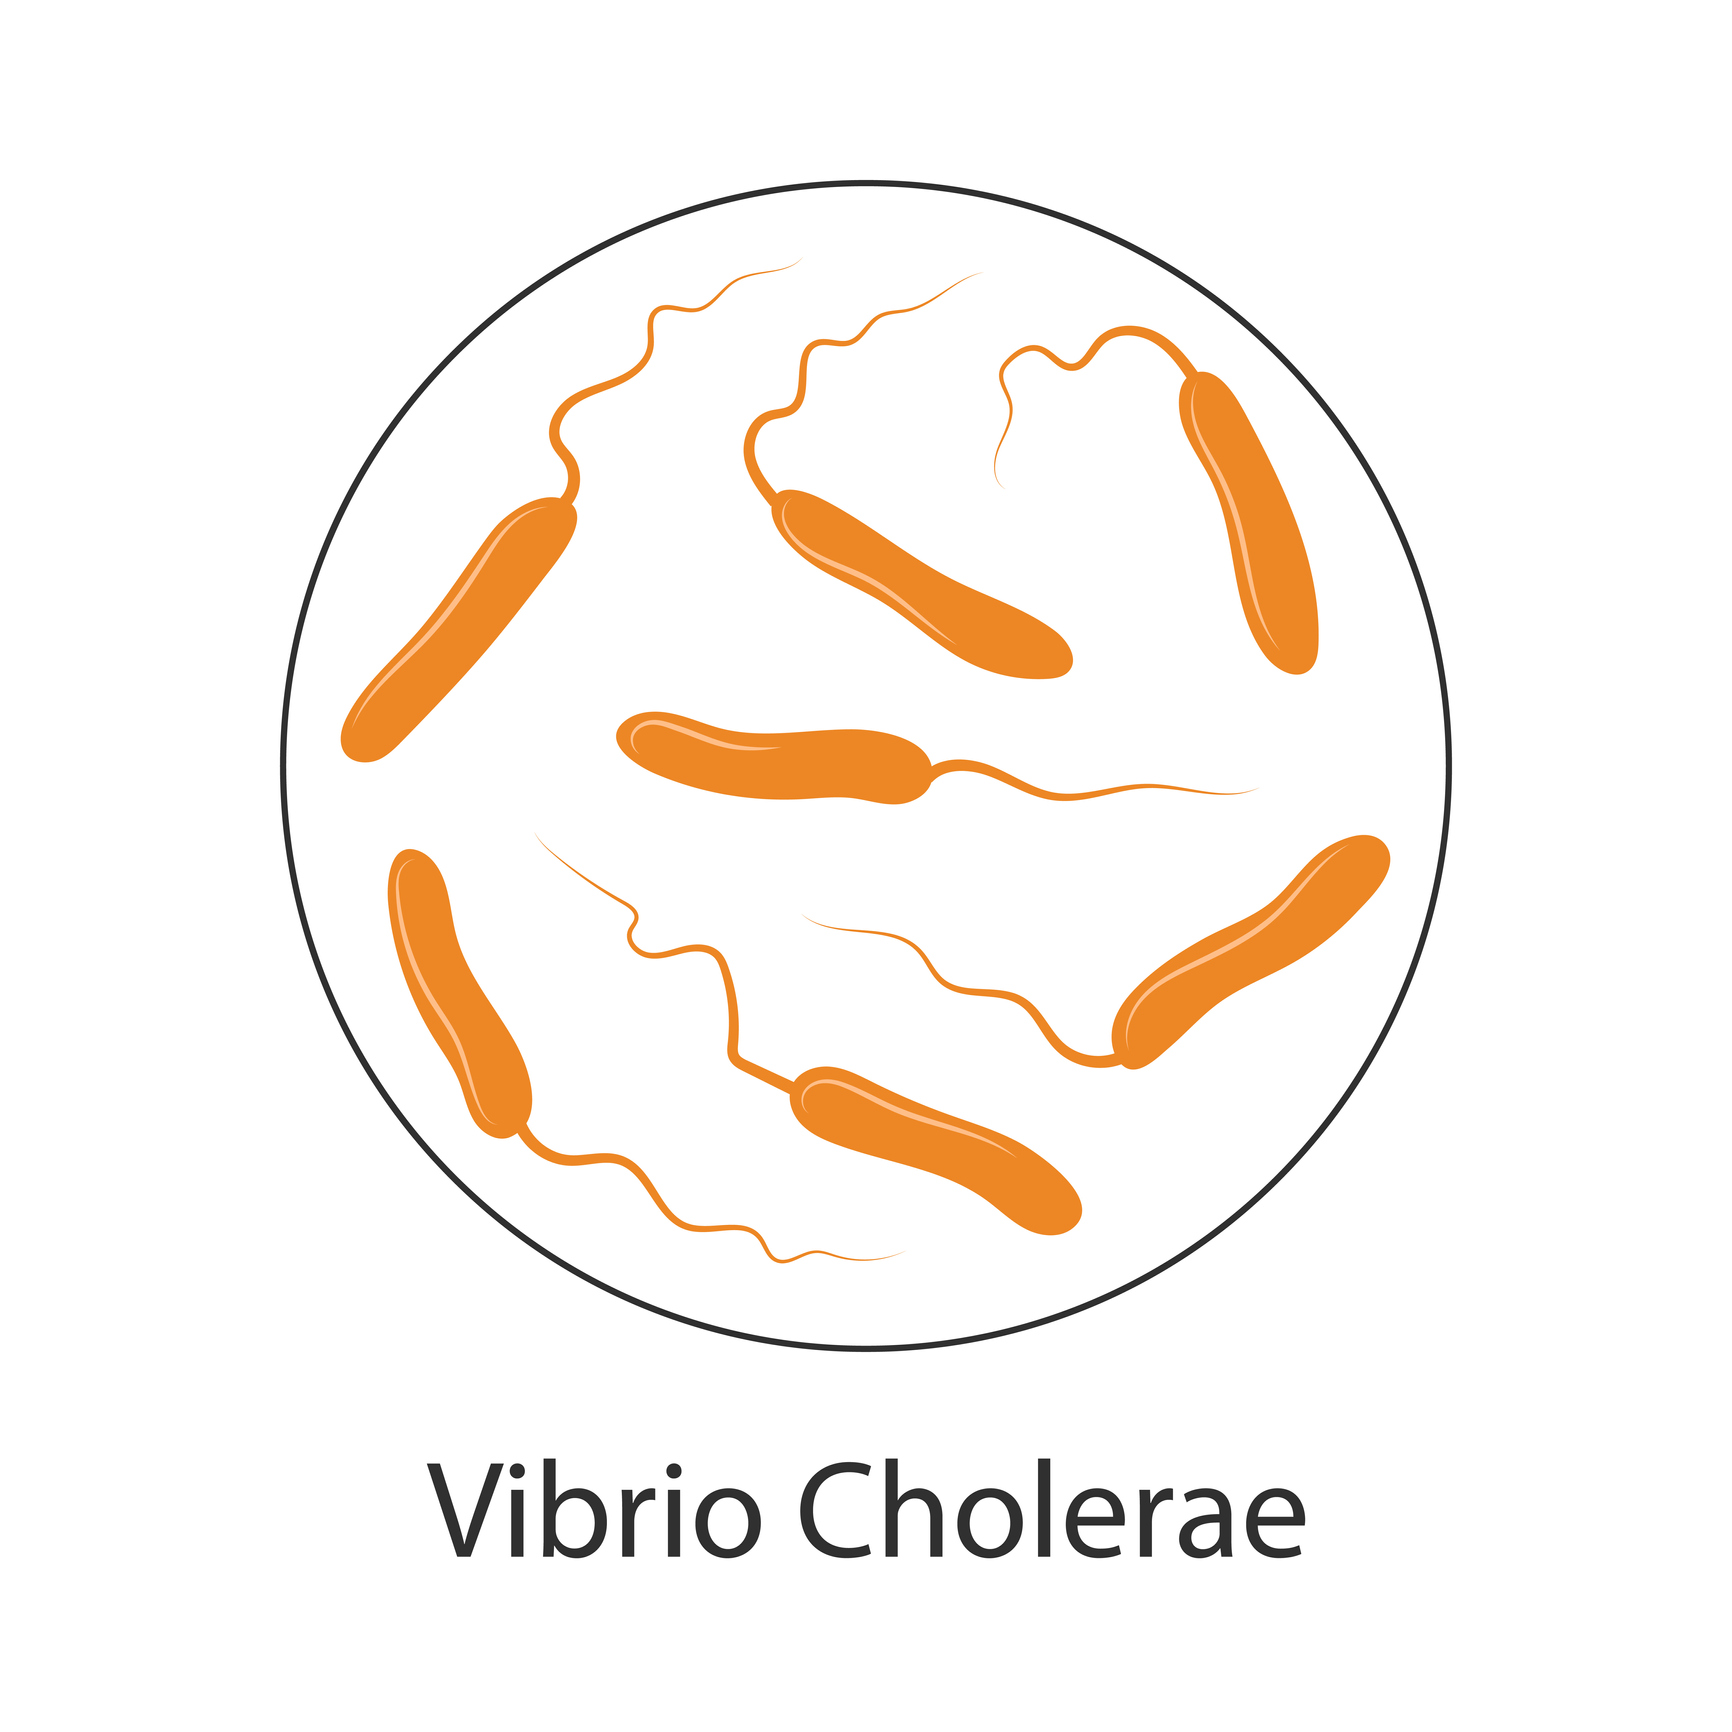 Cholera bacteria Vibrio cholerae